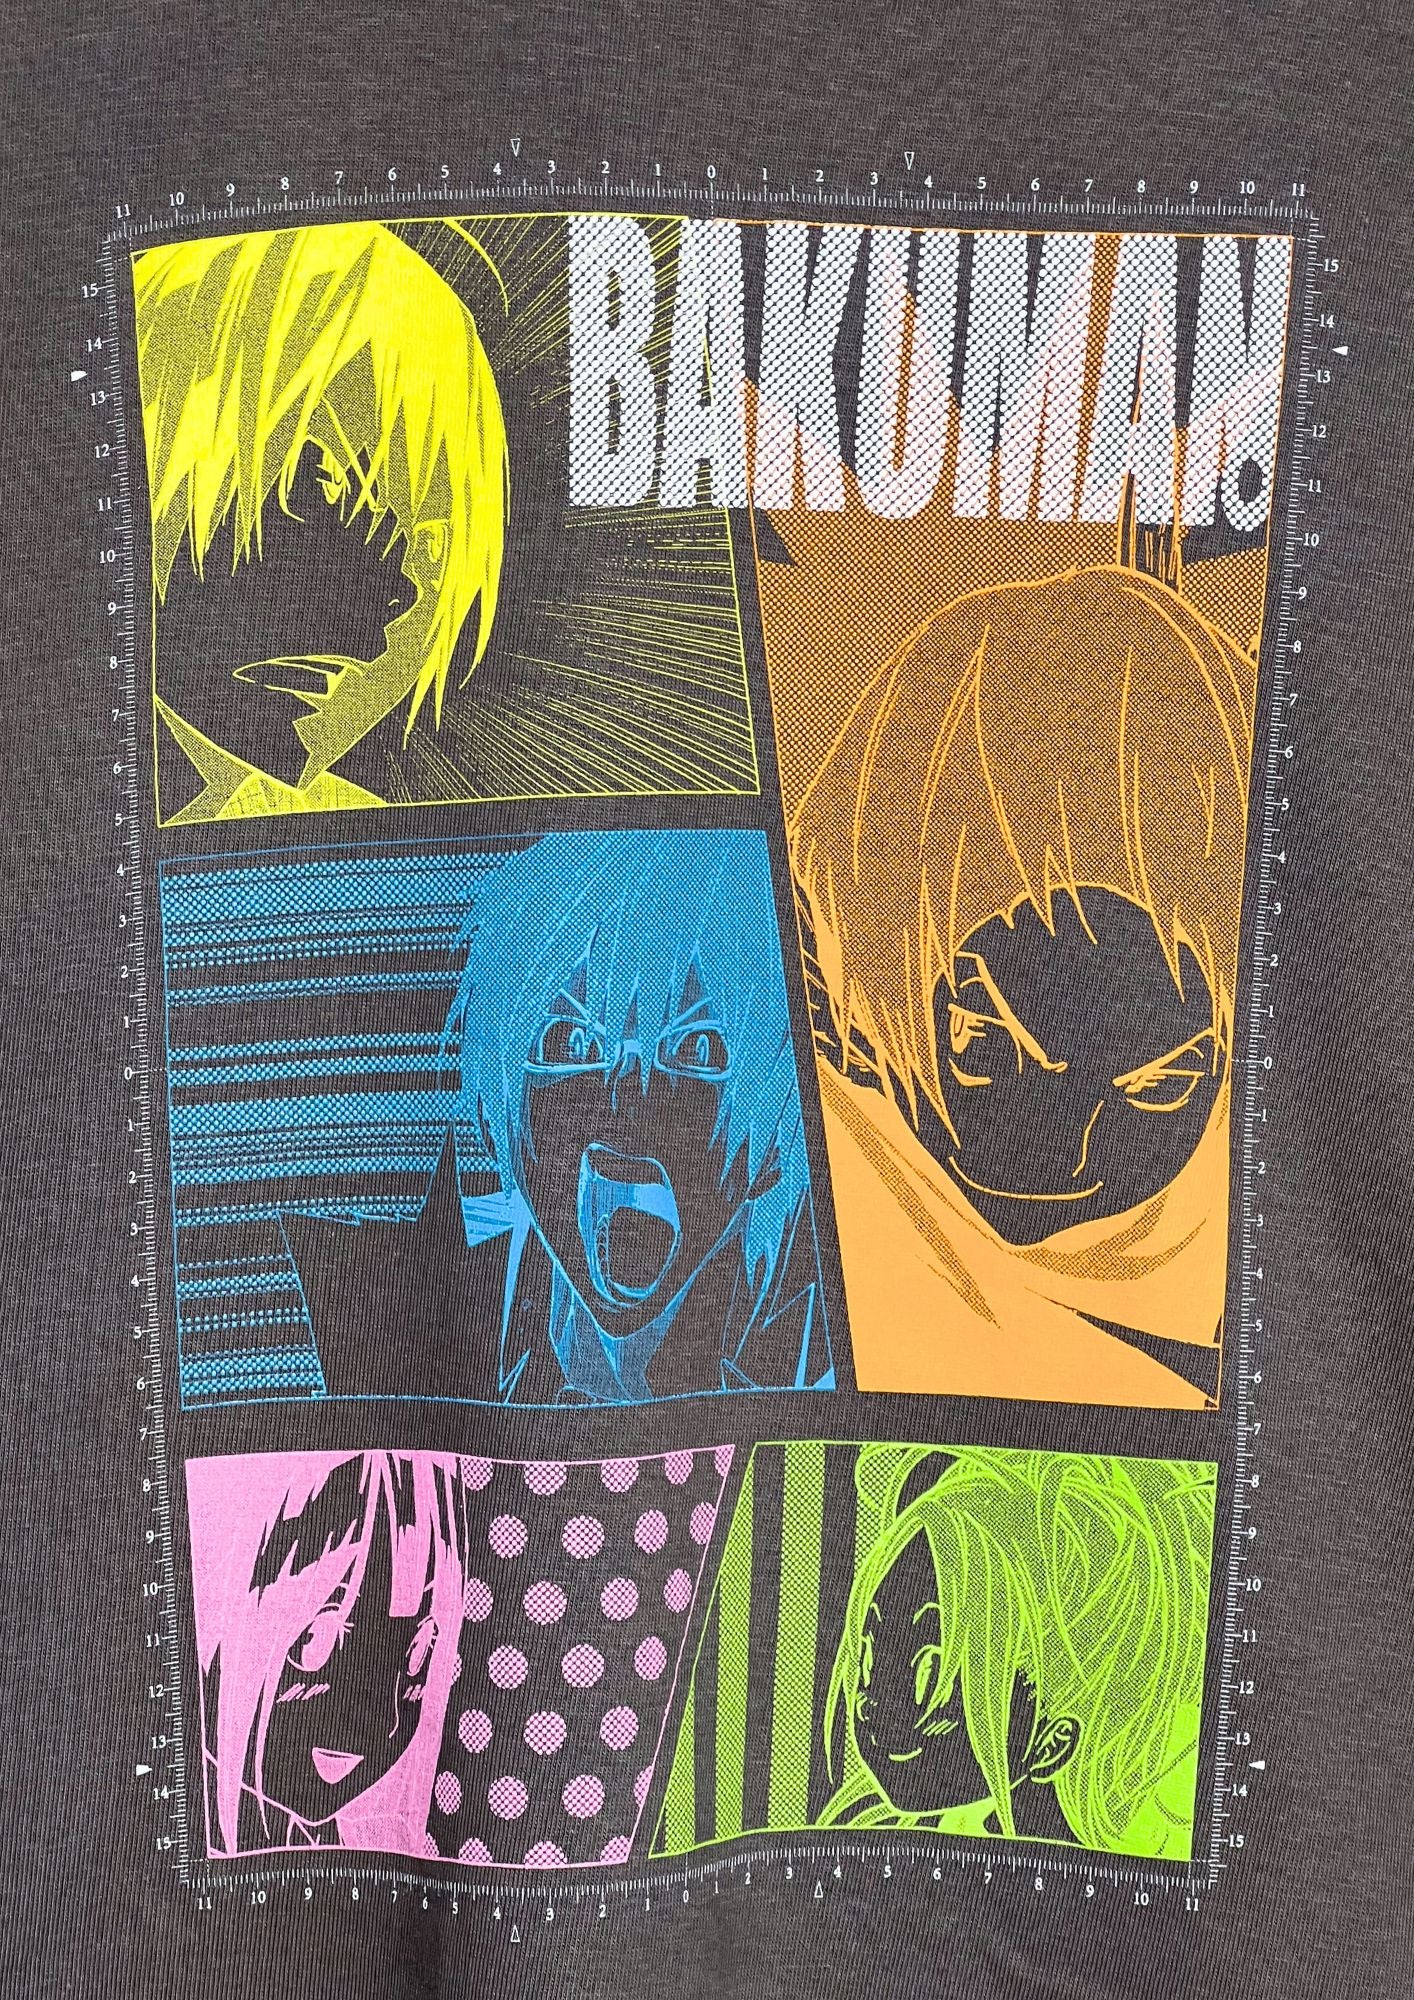 2010s Bakuman x Shonen Jump Weekly Magazine Lottery Winner Limited T-shirt